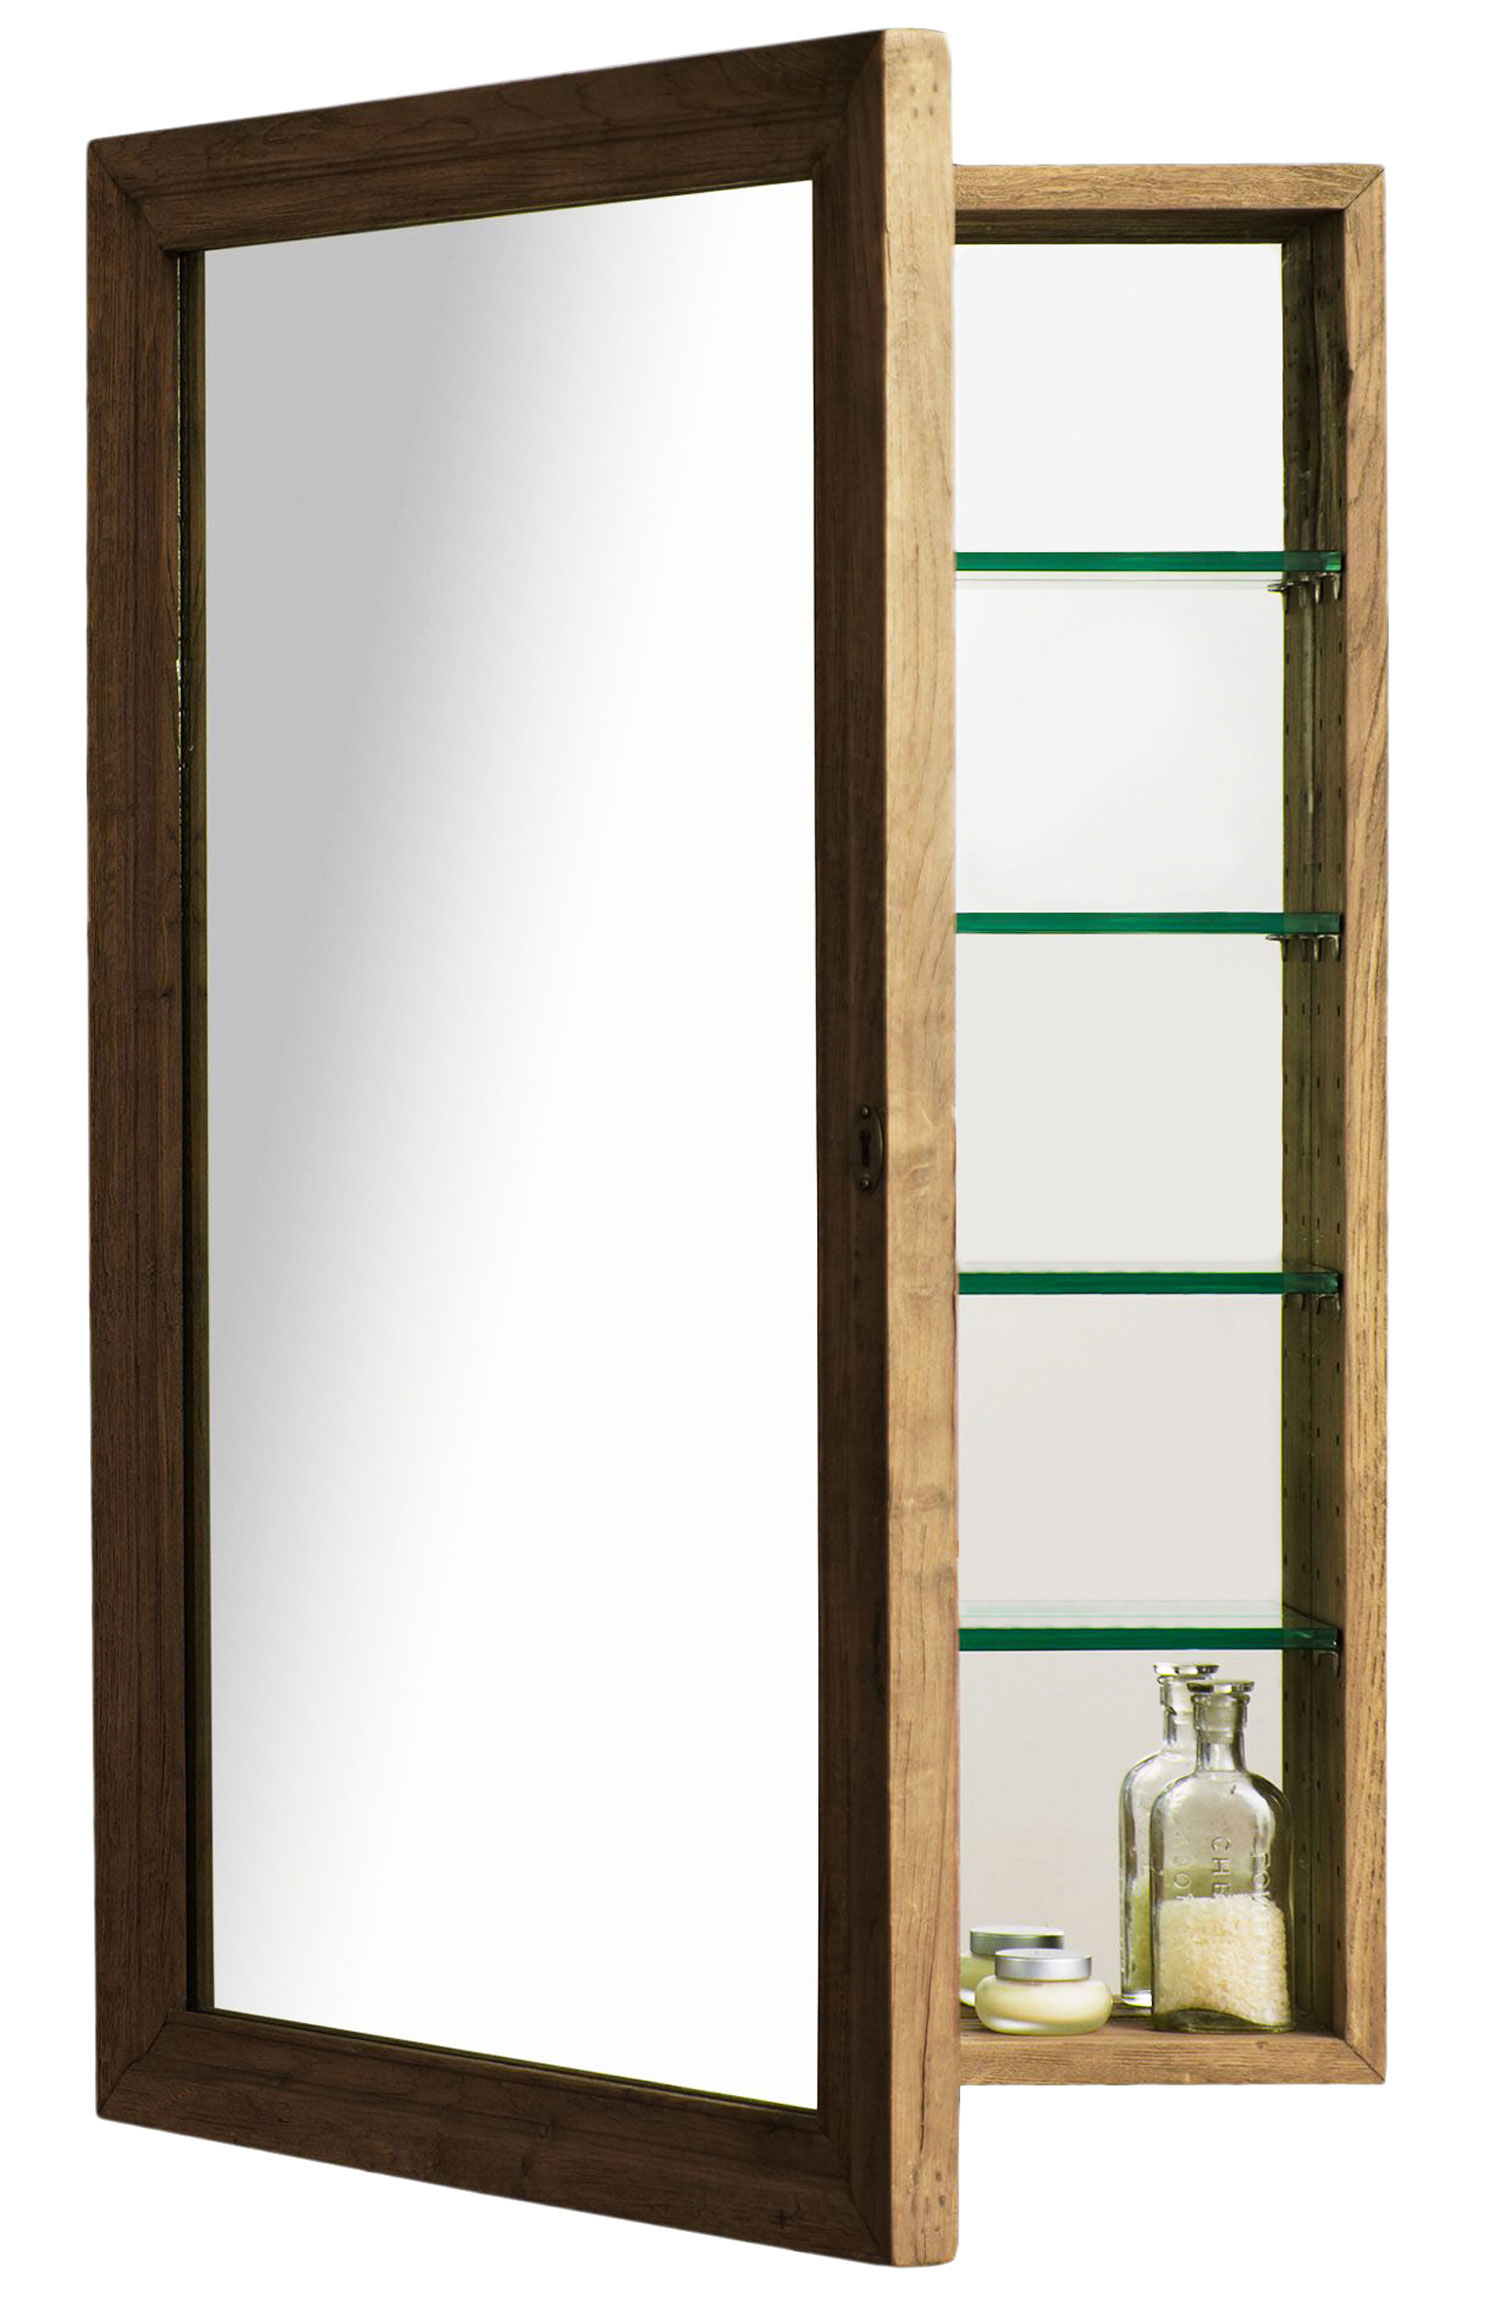 Build a Wood-Framed Bathroom Mirror Shelf